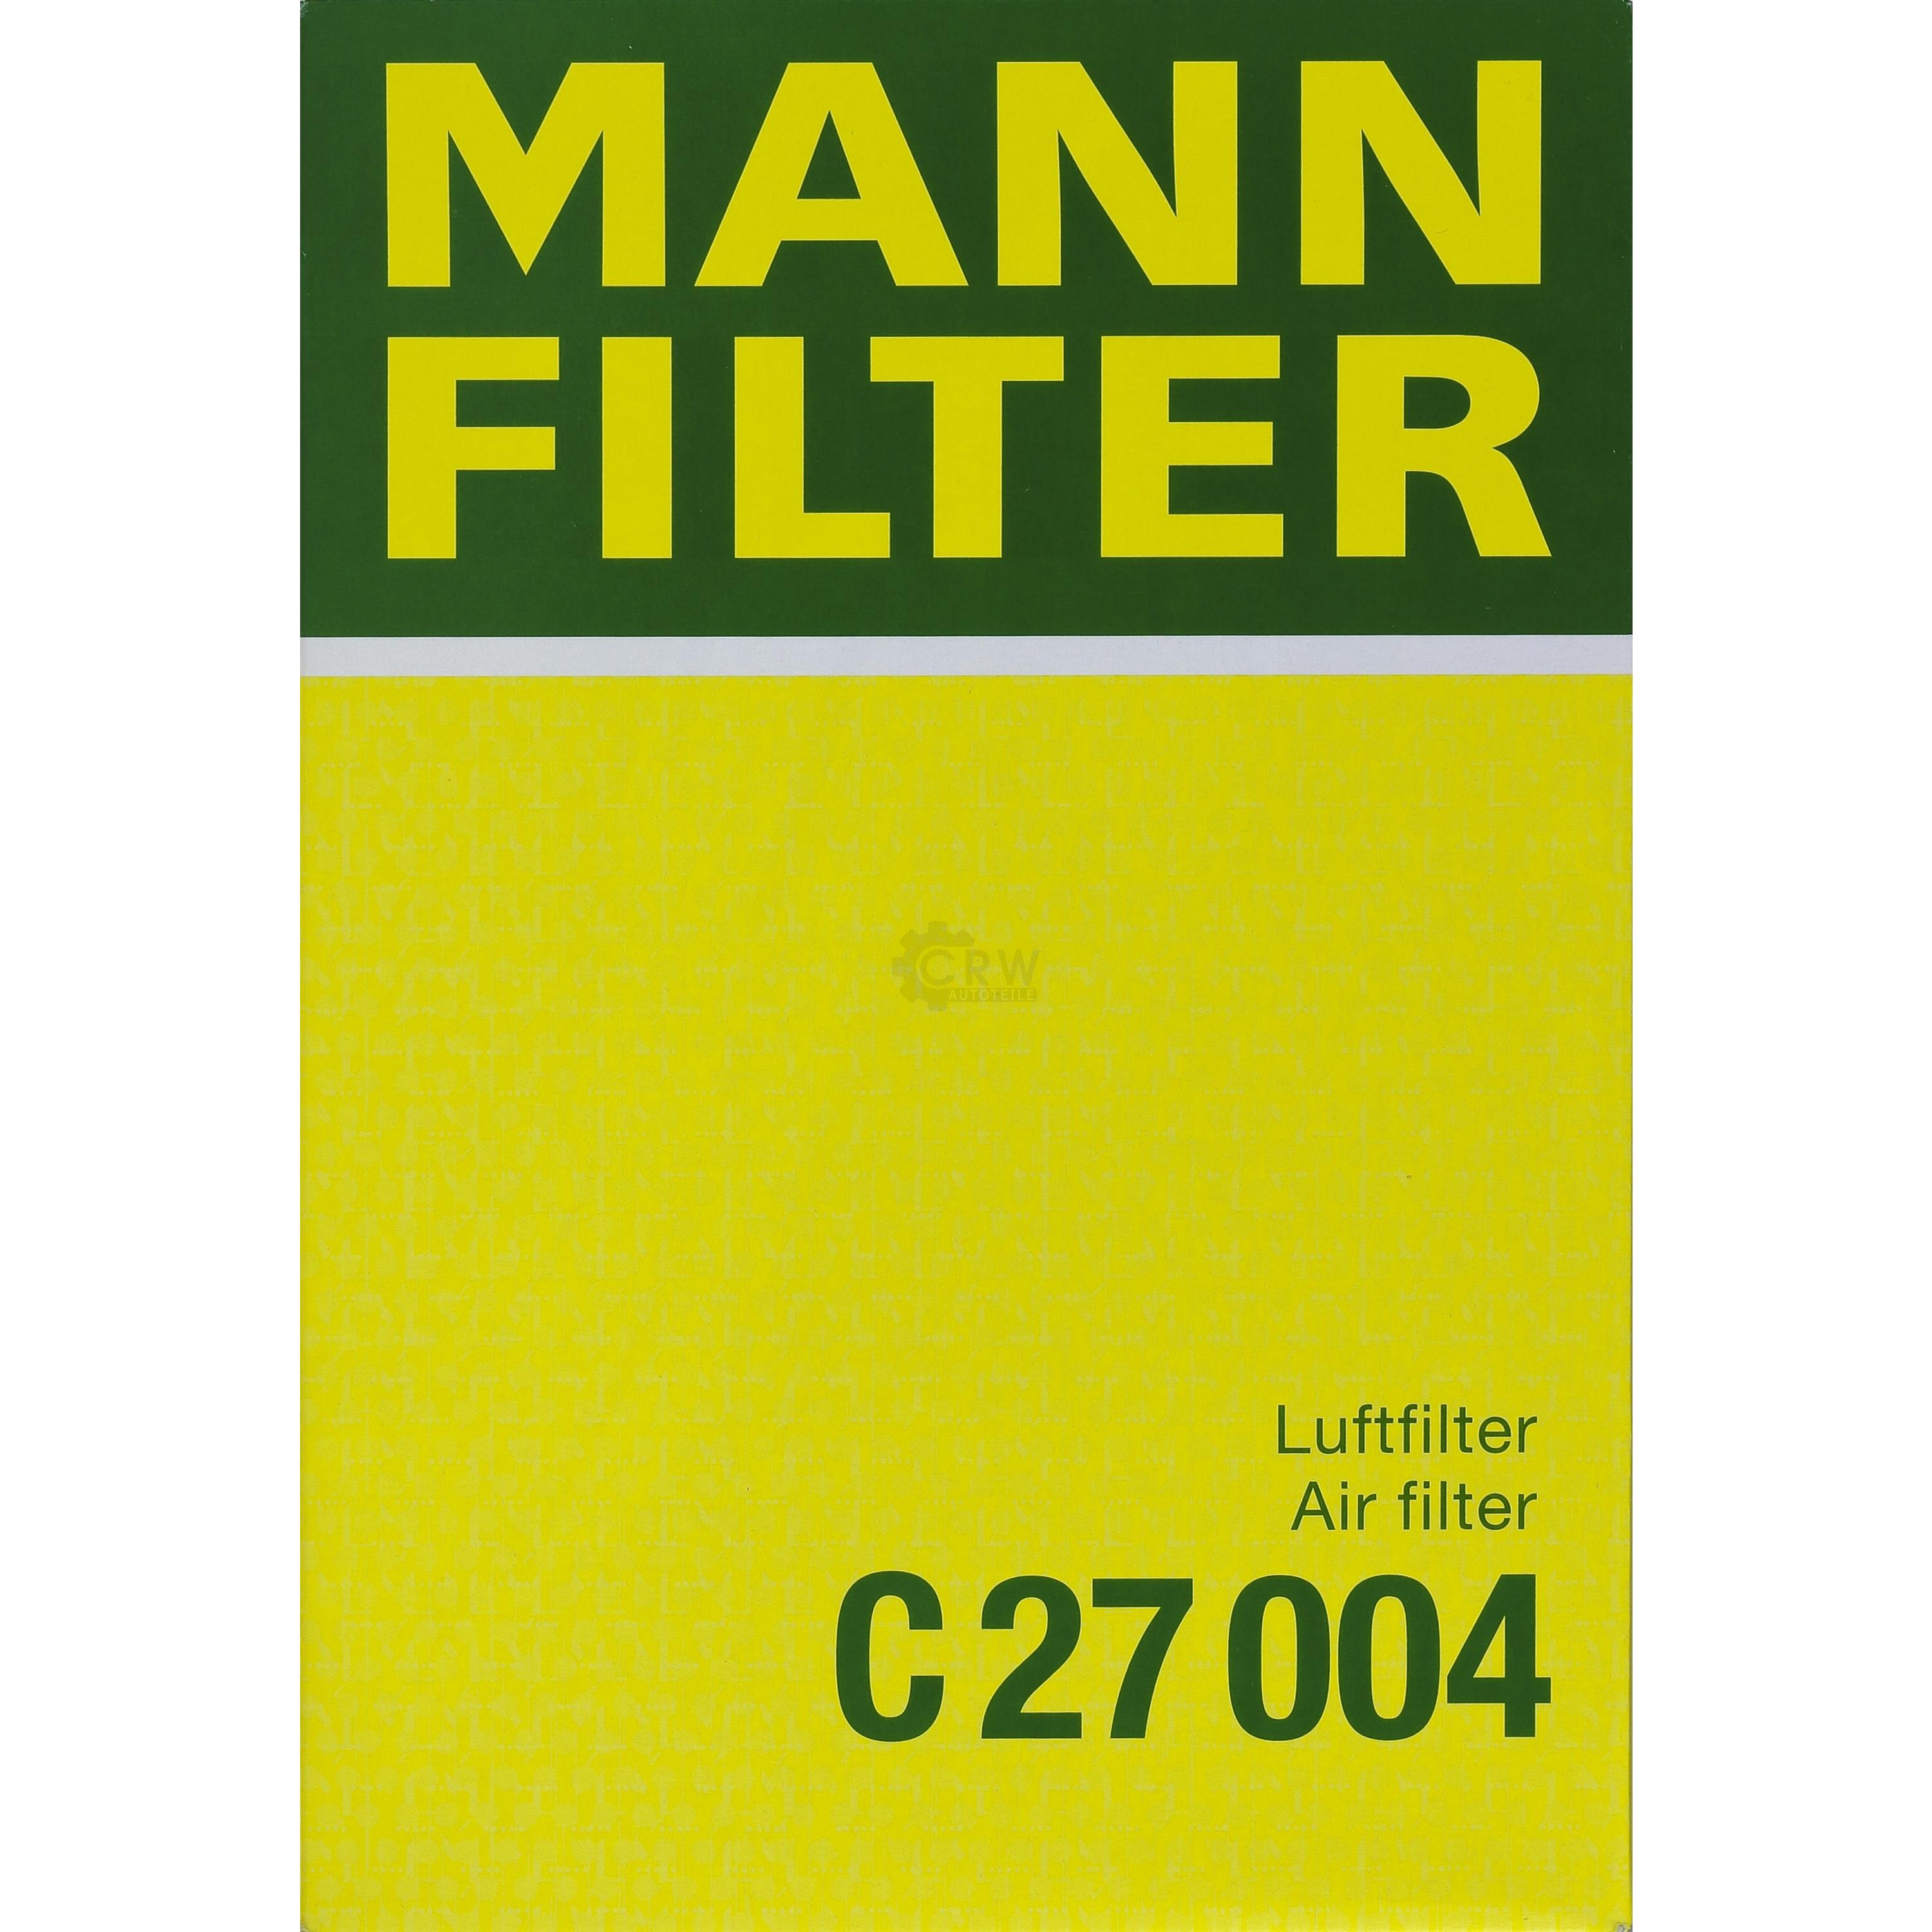 MANN-FILTER Luftfilter für Mercedes-Benz B-Klasse W246 W242 A-Klasse W176